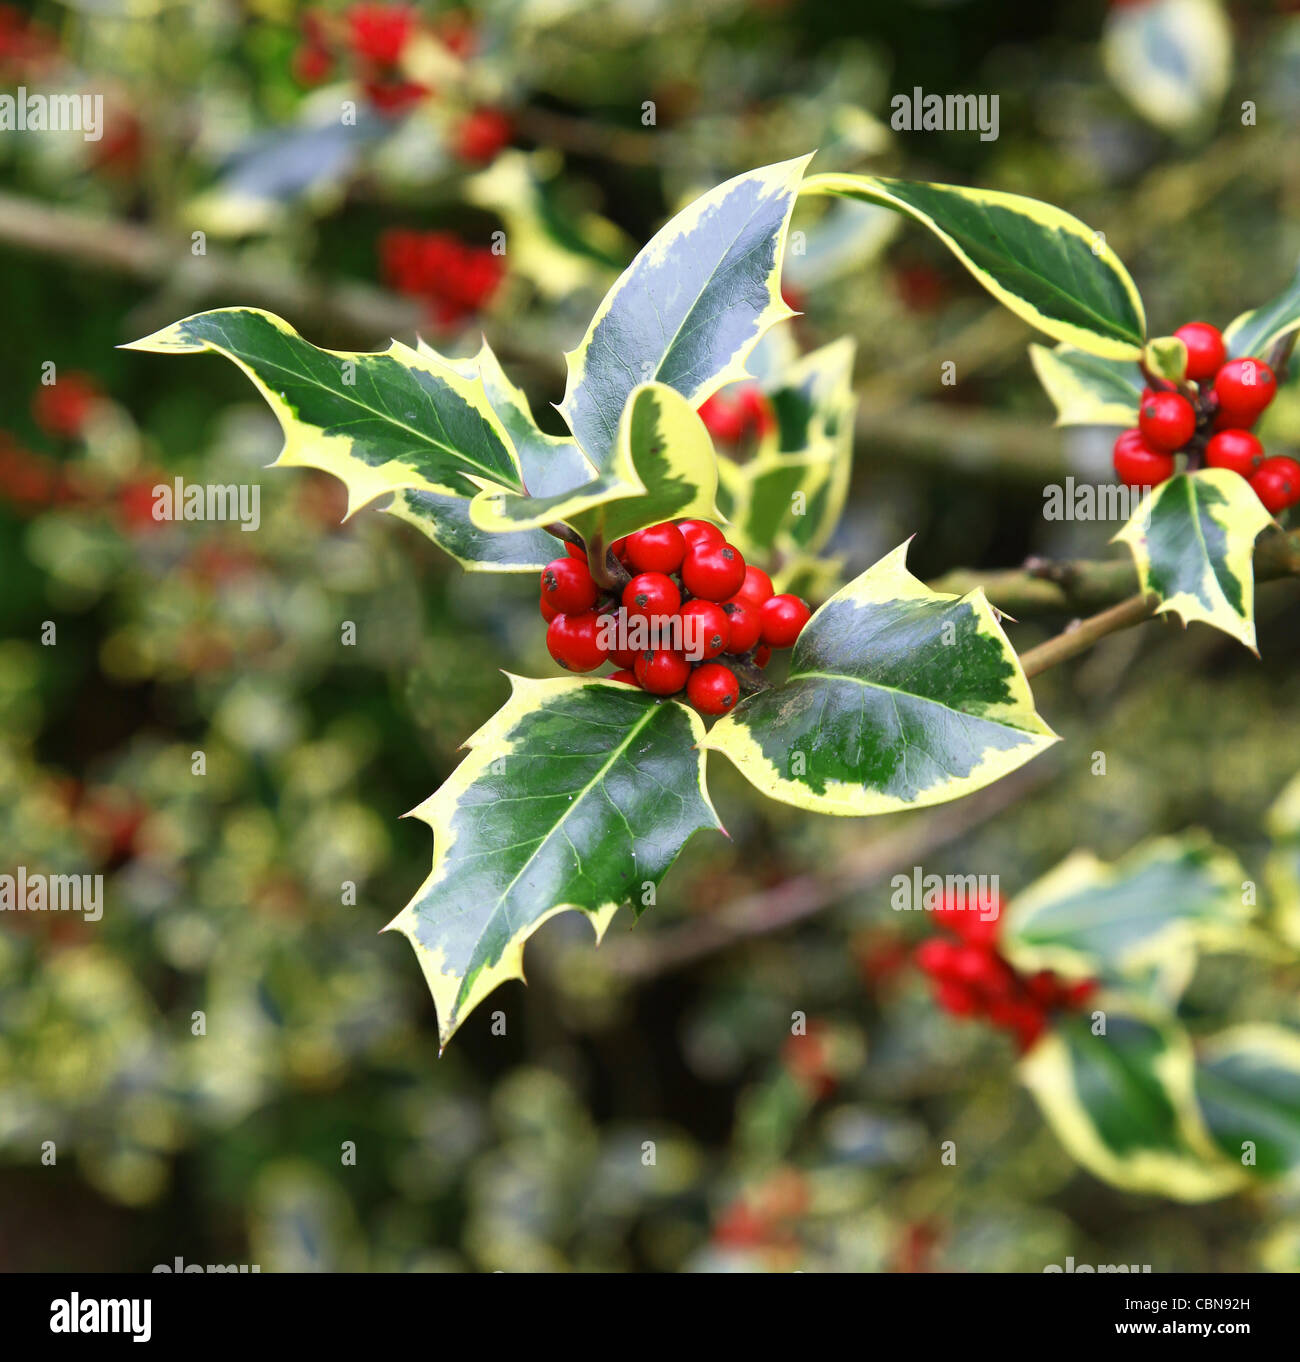 Rote Beeren und gelbe und grüne Blätter einer variegierten Stechpalme, Ilex aquifolium „Madame Briot“, England, Vereinigtes Königreich Stockfoto